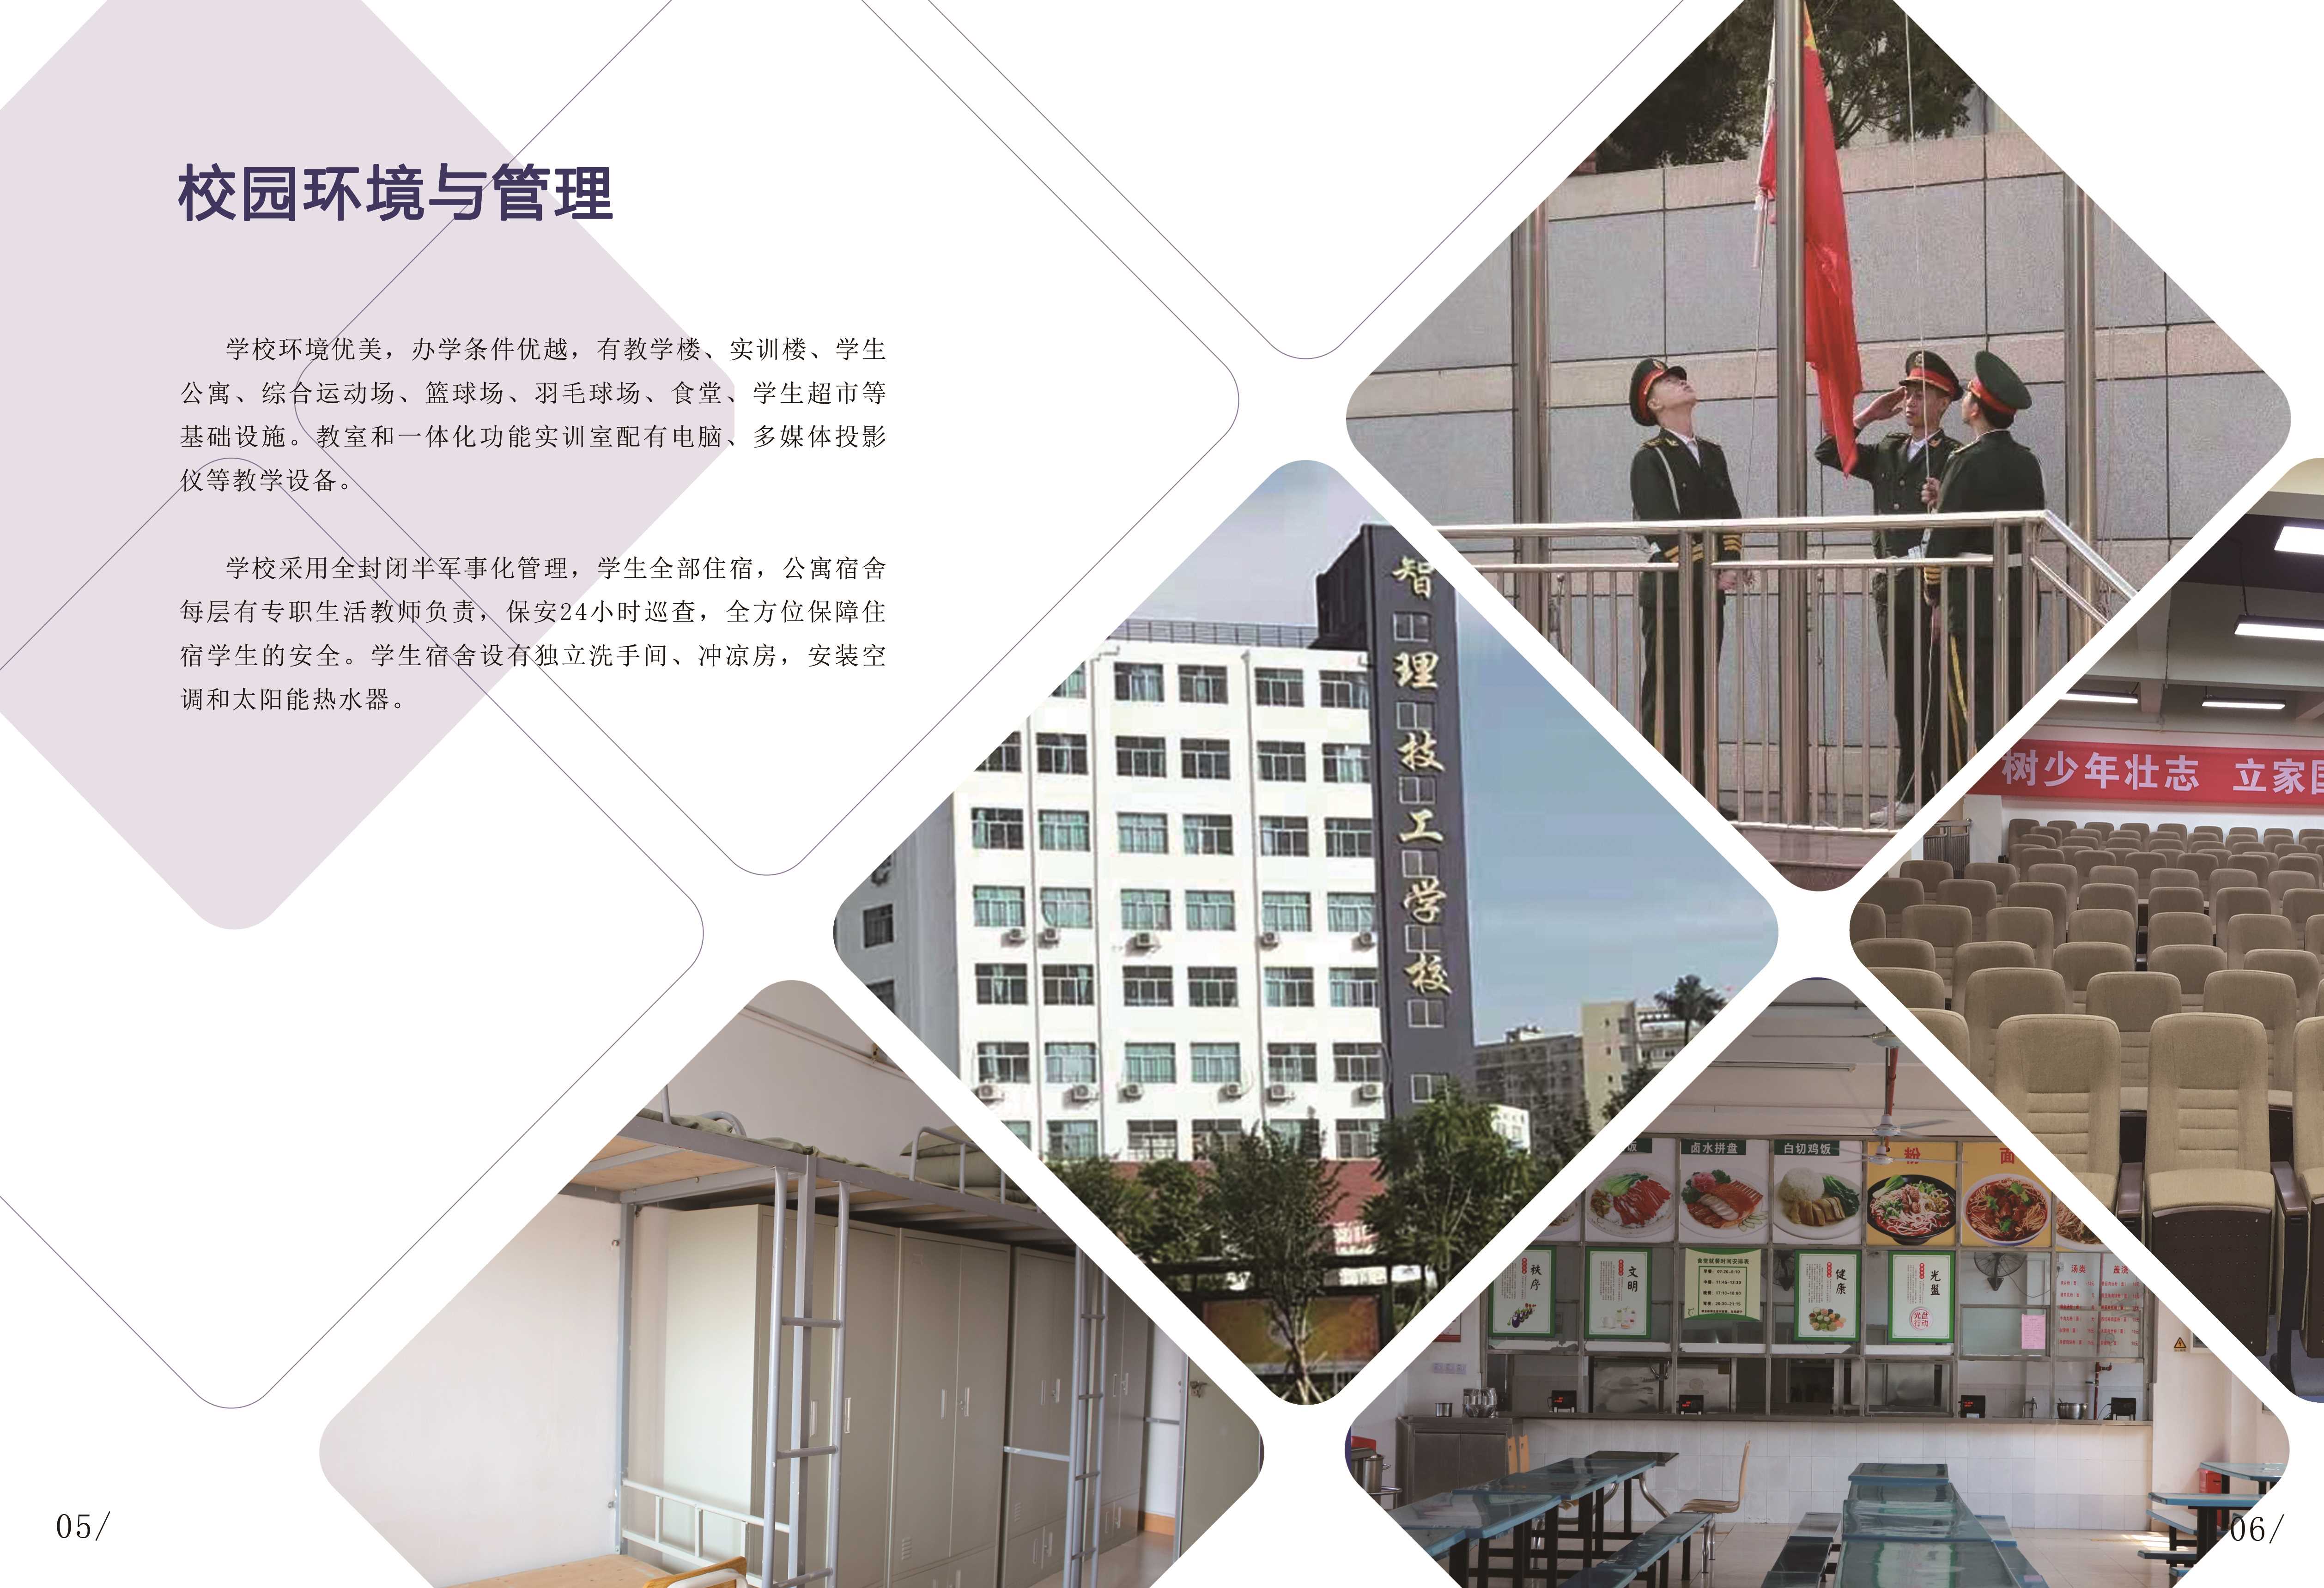 4、深圳市智理技工学校2020年招生简章校园环境与管理